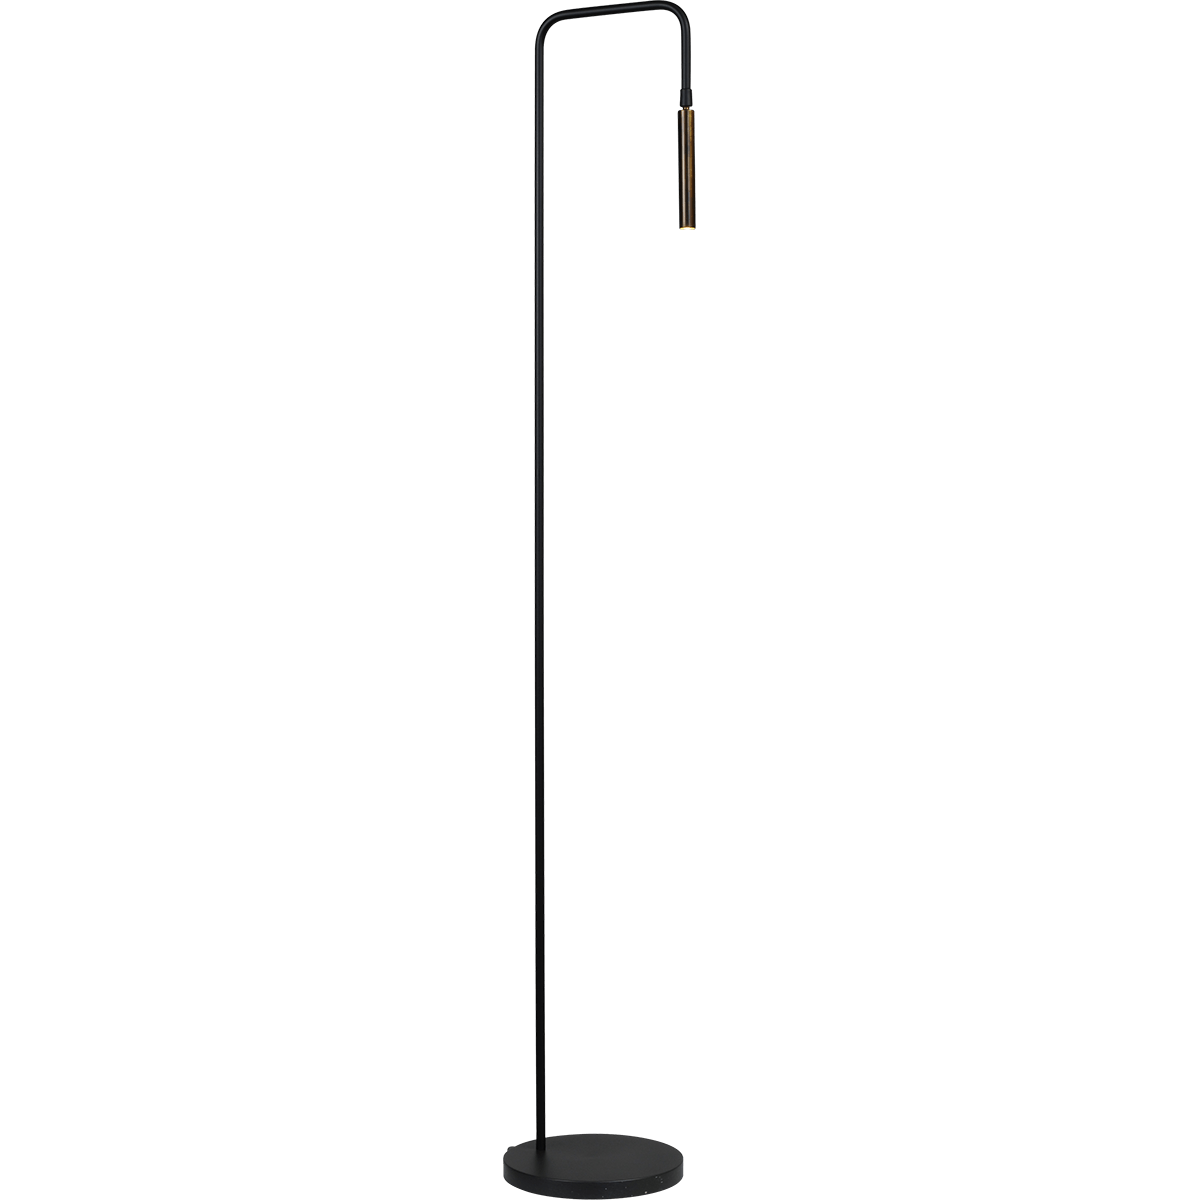 Vloerlamp Flute 1-lichts zwart/antique brass hoogte 153cm